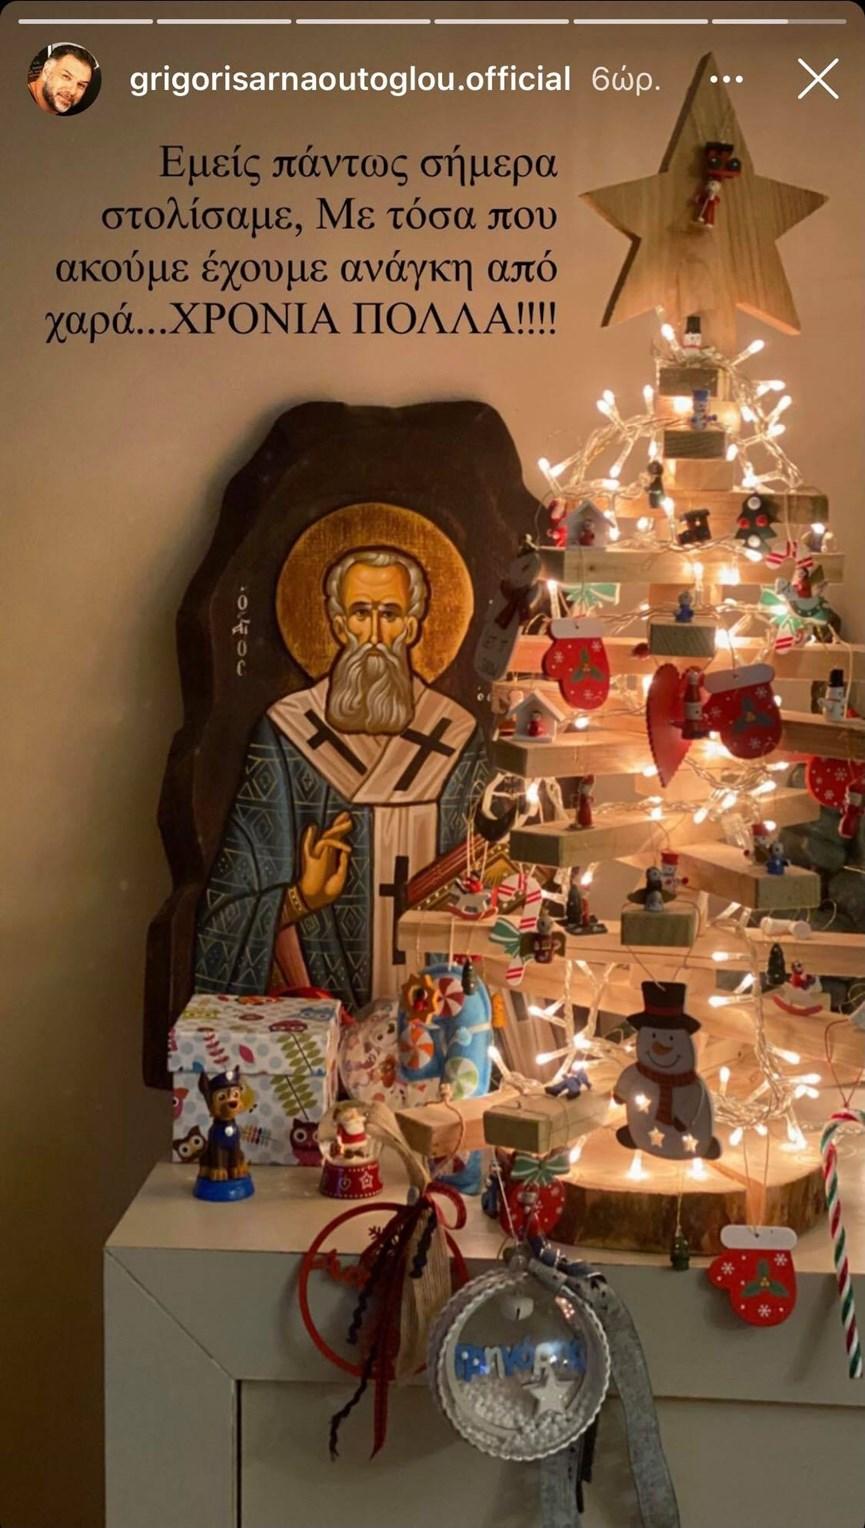 Ο Γρηγόρης Αρναούτογλου στόλισε το Χριστουγεννιάτικο δέντρο του